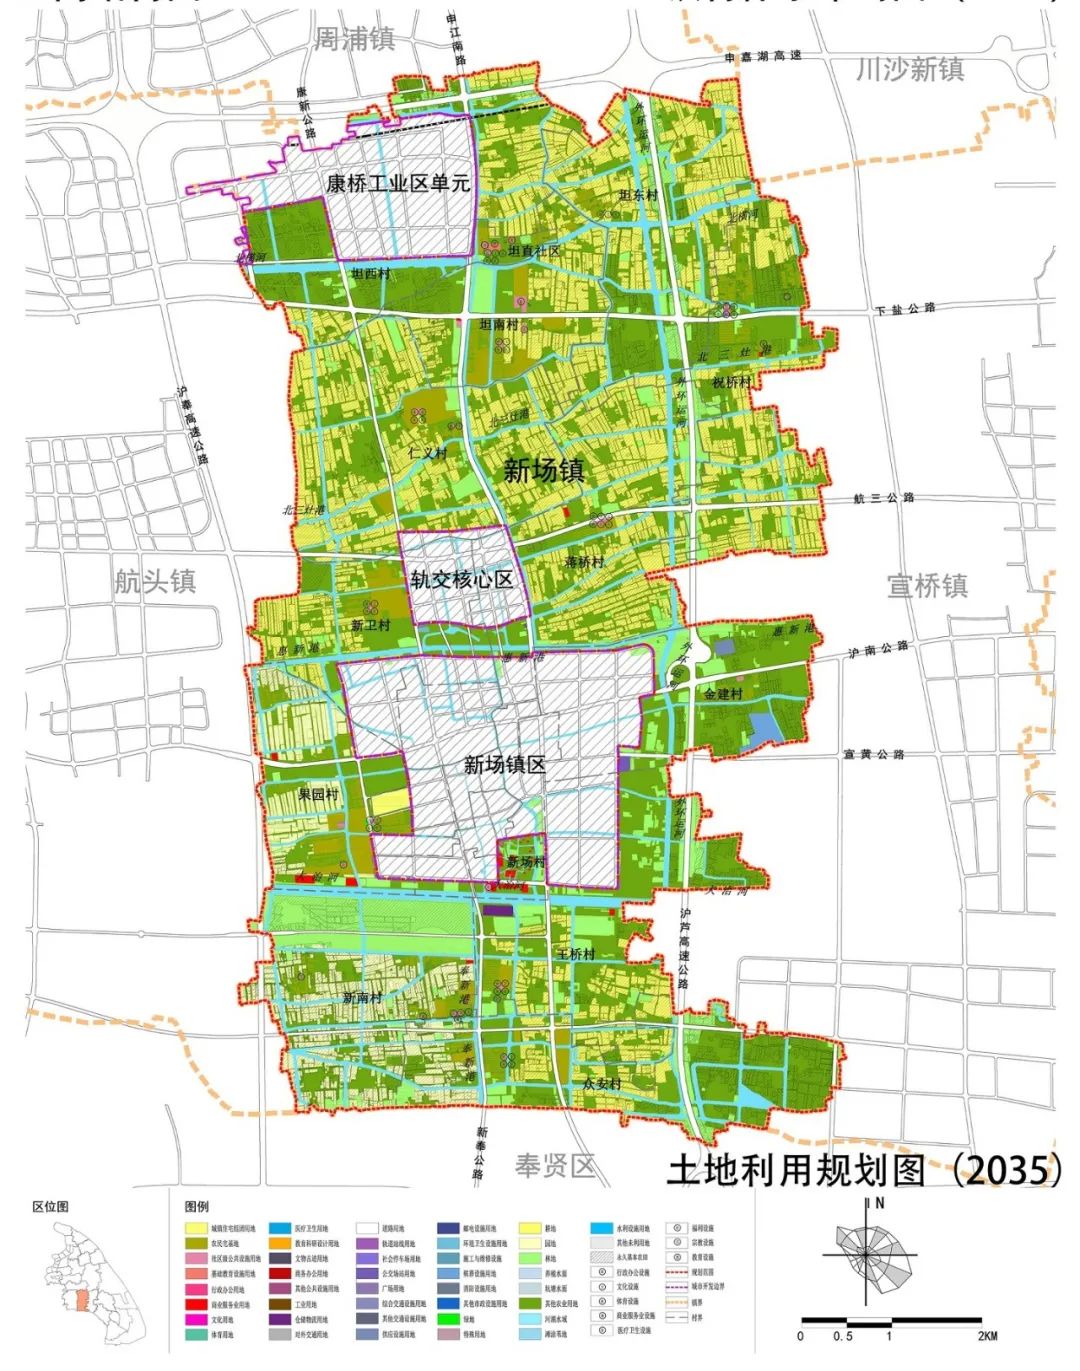 国土空间规划体系：上海市国土空间总体规划体系及各级案例分享